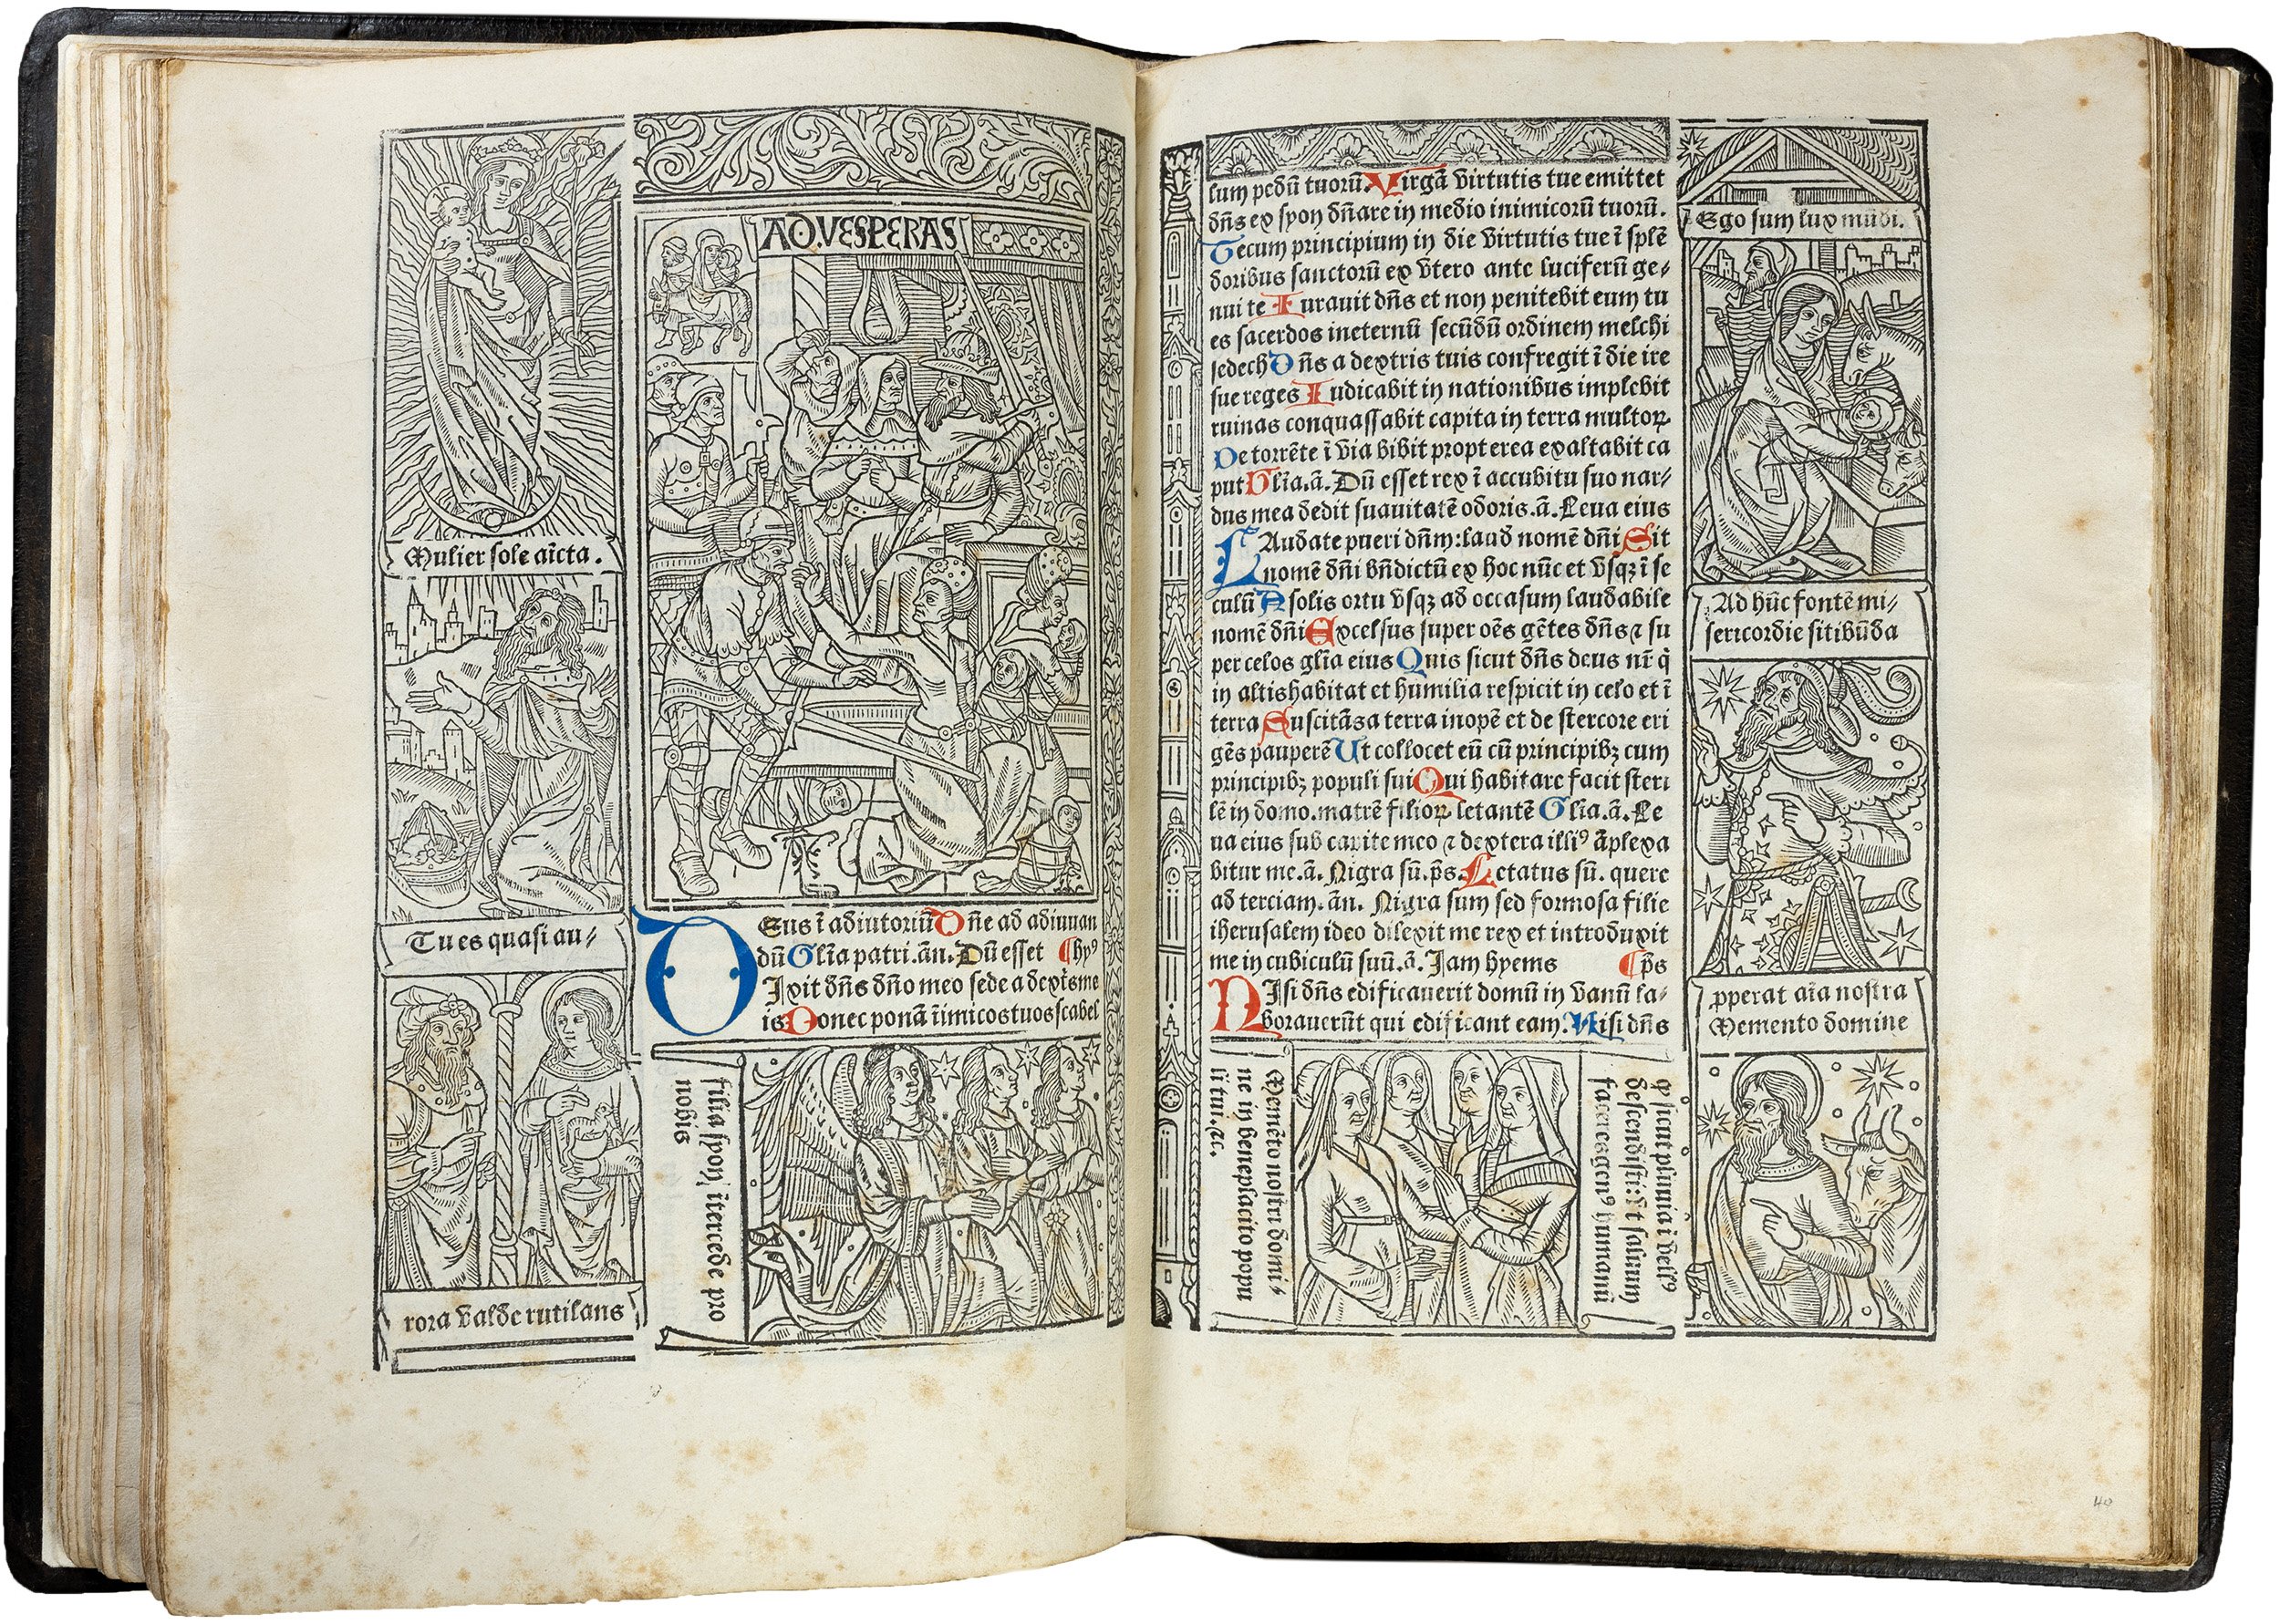 Grandes-heures-royales-verard-1488-1489-printed-book-of-hours-horae-bmv-42.jpg